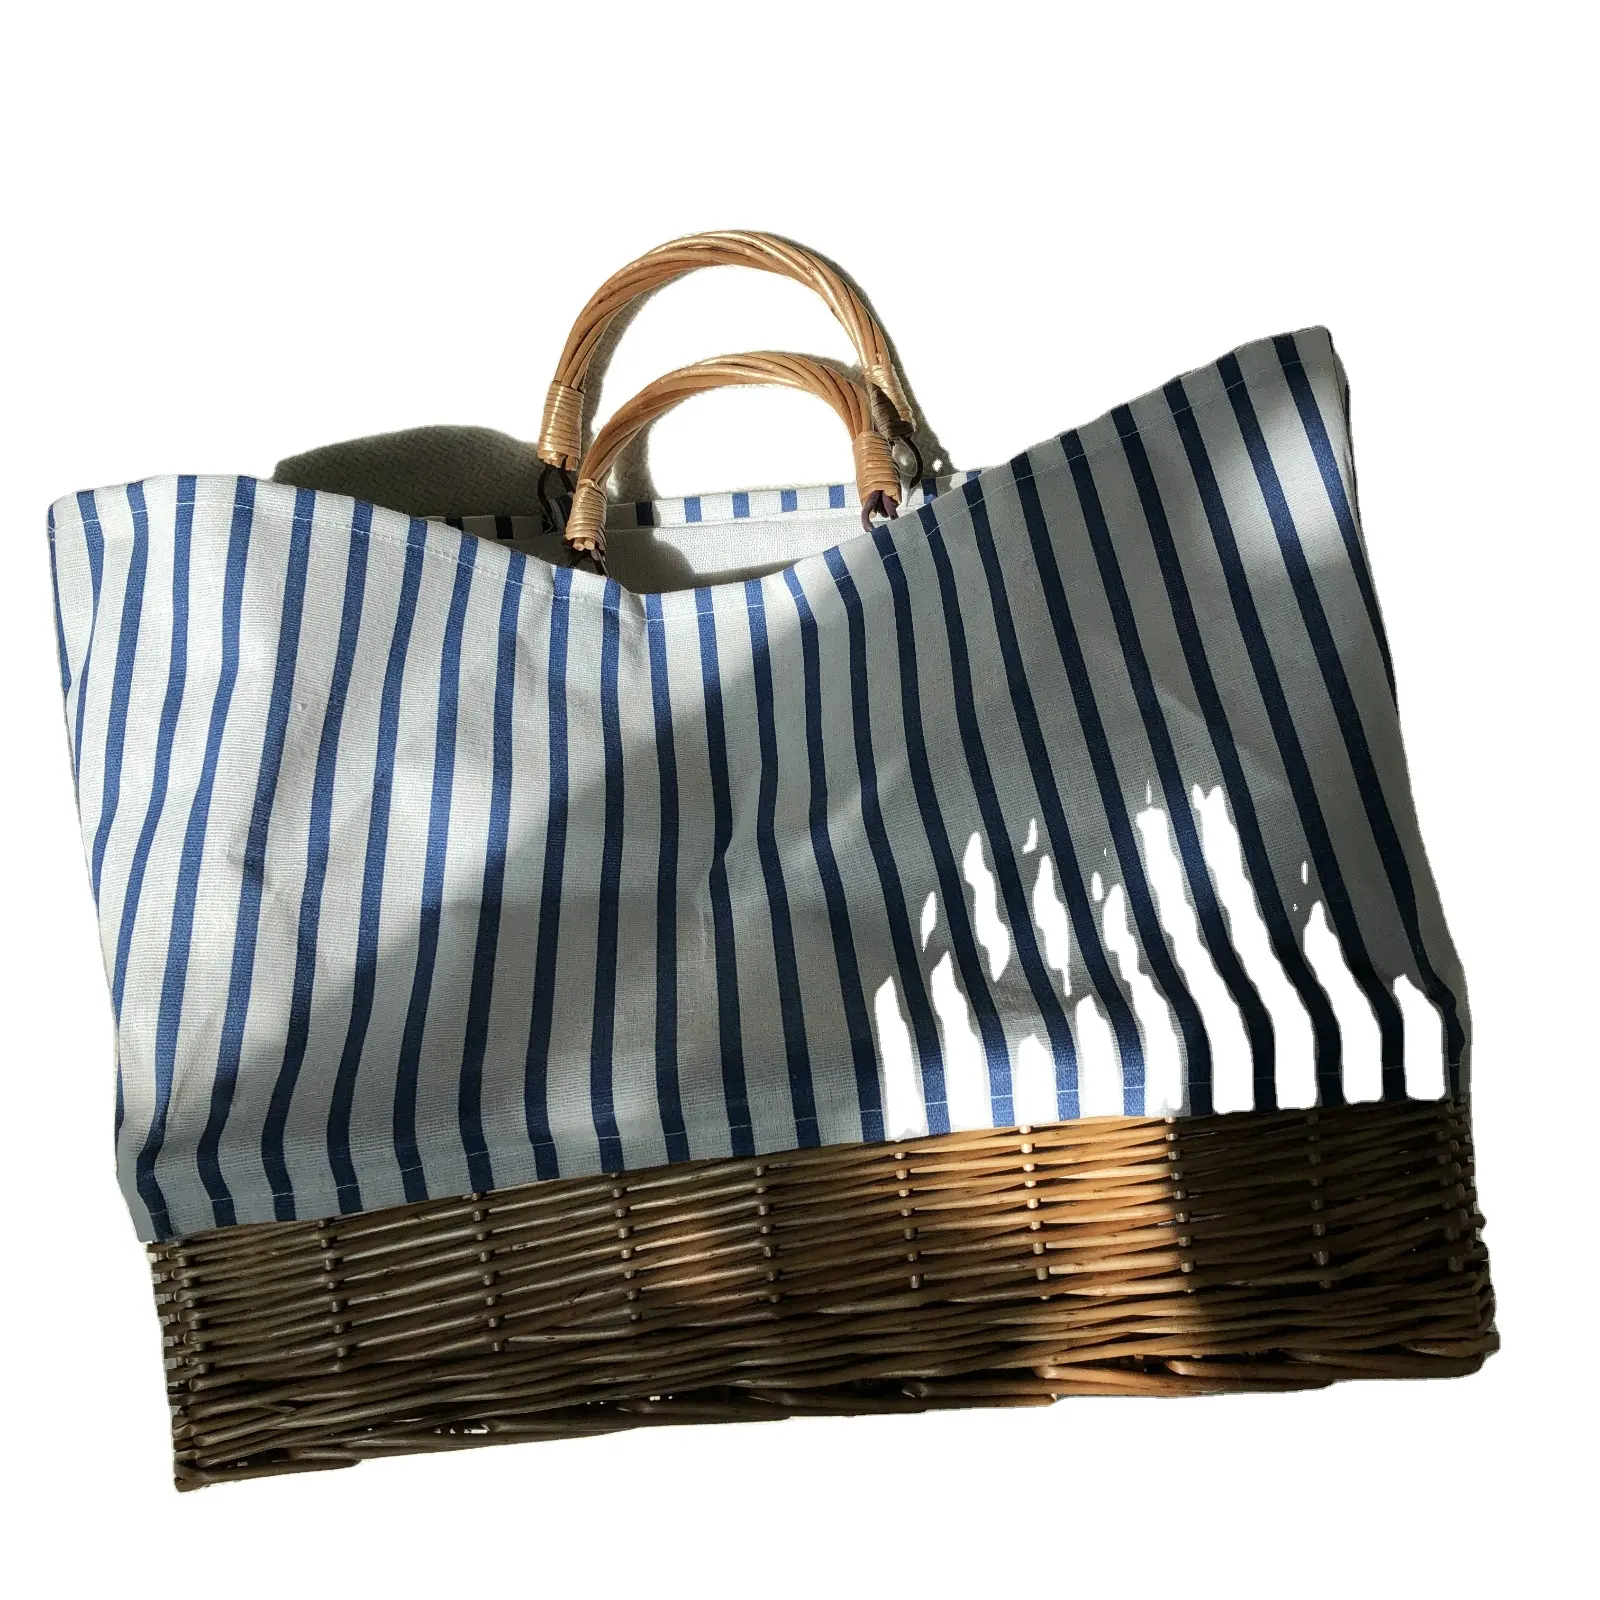 Yeni varış tasarımcı kadın çantalar çanta çanta bez çanta hasır çanta Bohemian kadınlar için